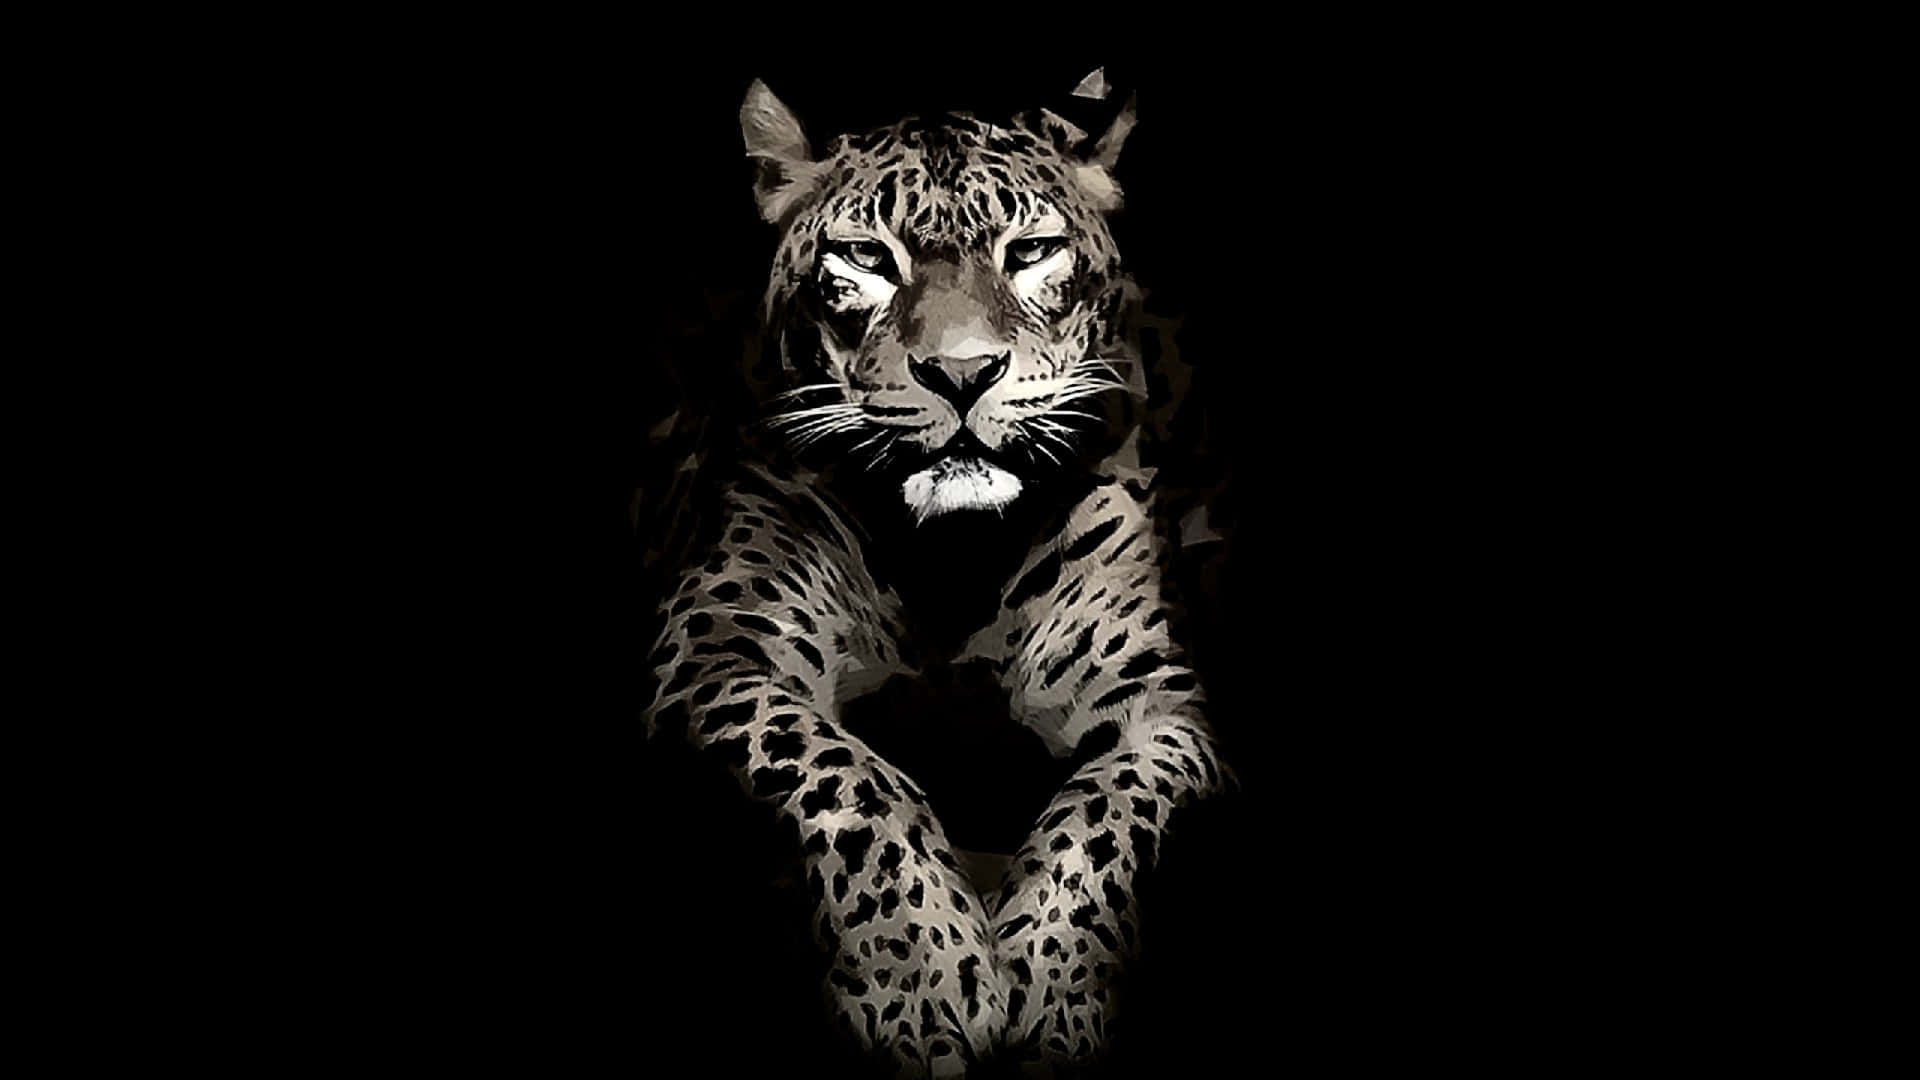 The elegant and powerful Jaguar